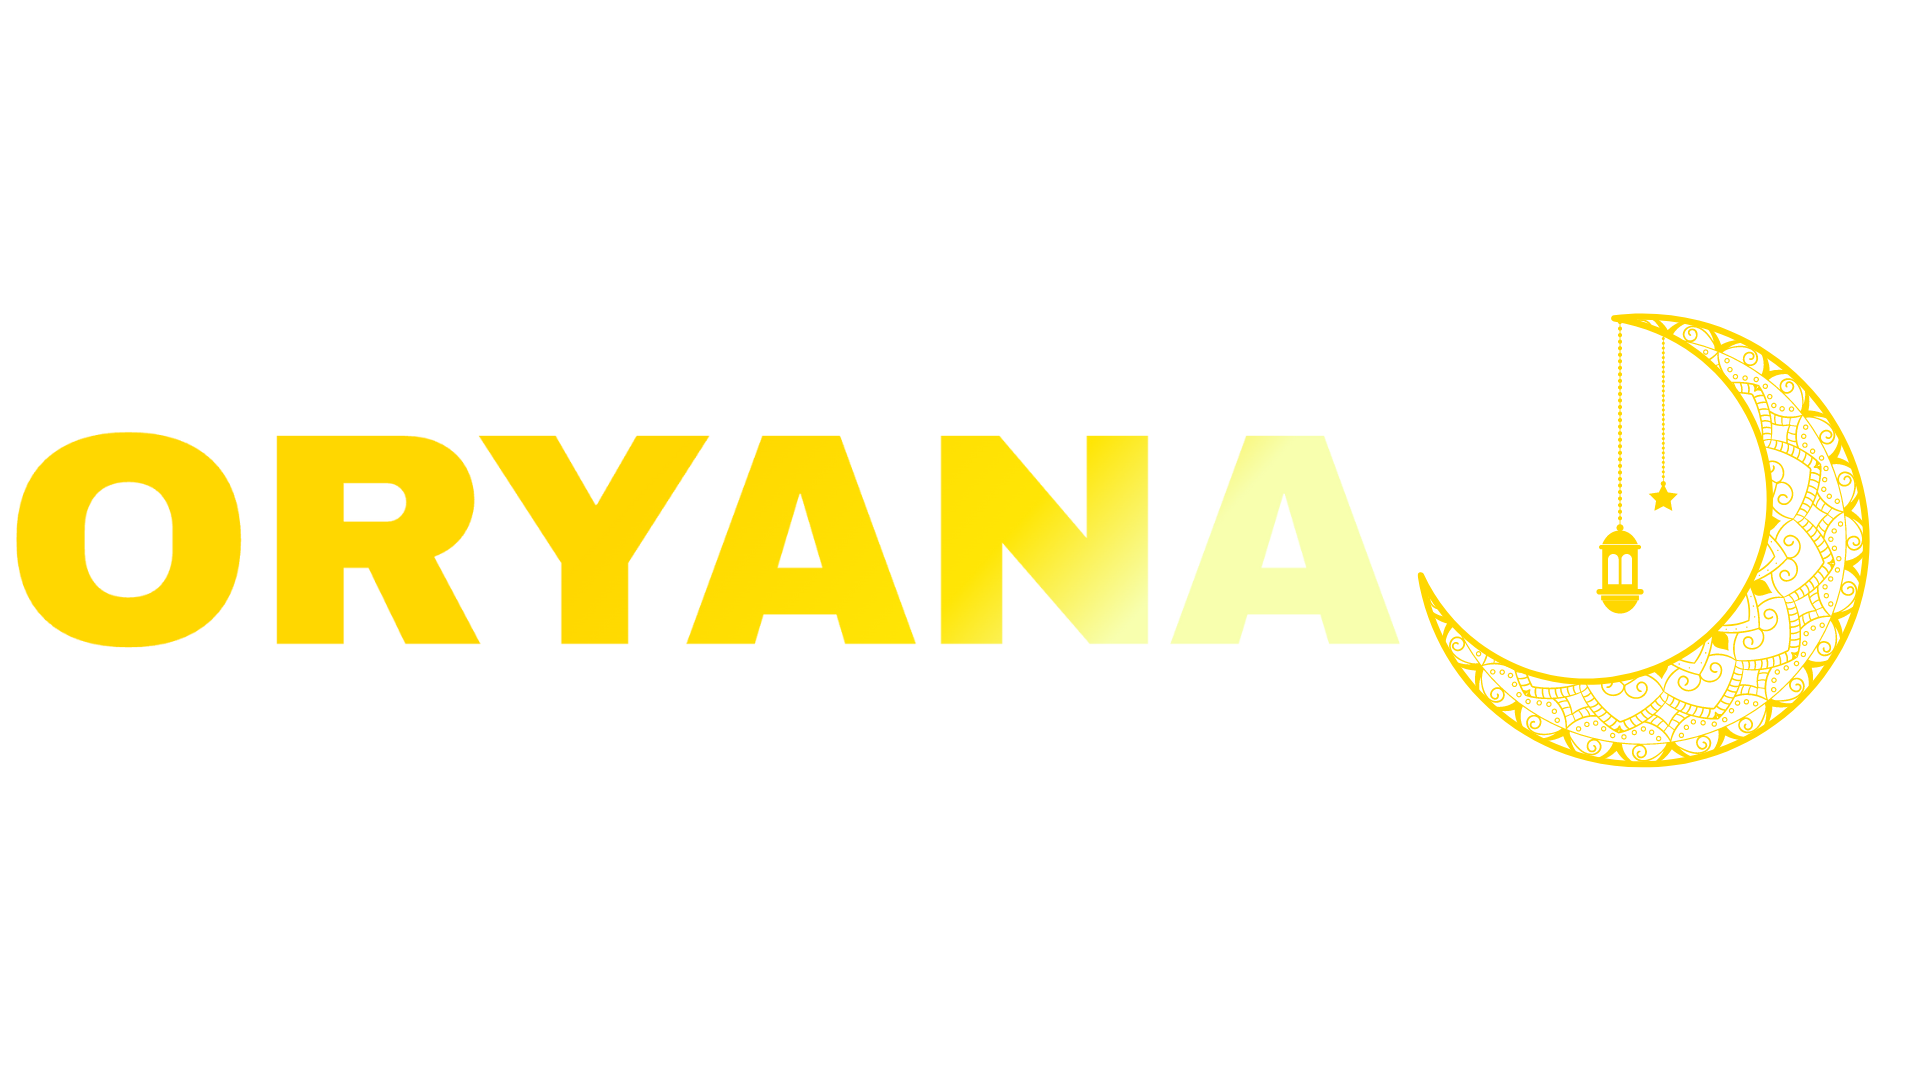 ORYANA